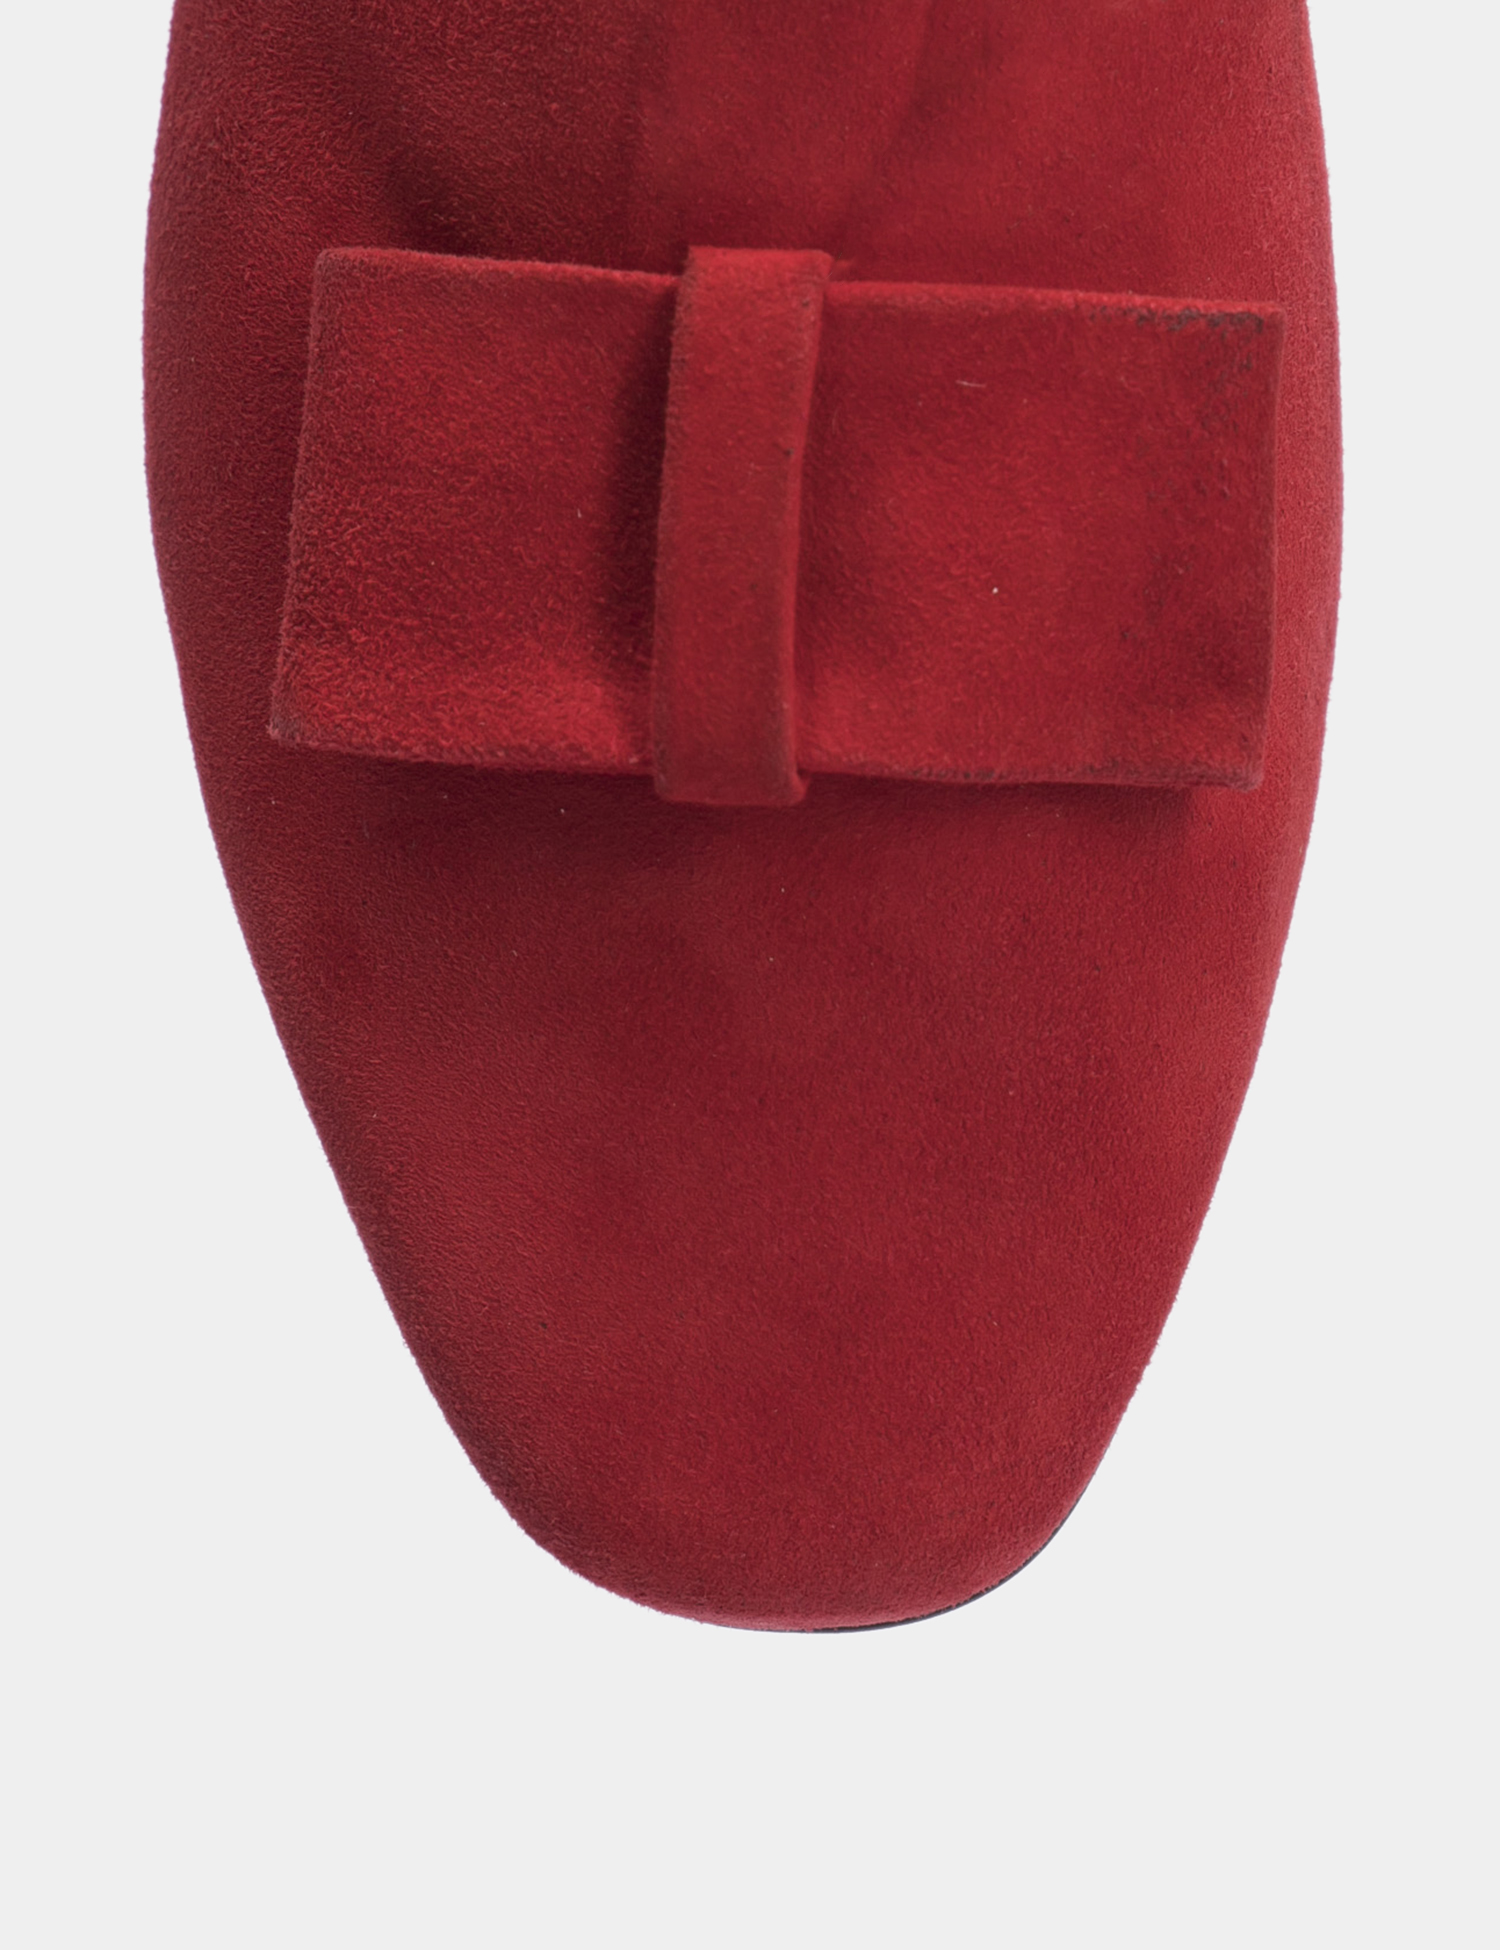 Картинка Жіночі червоні замшеві туфлі